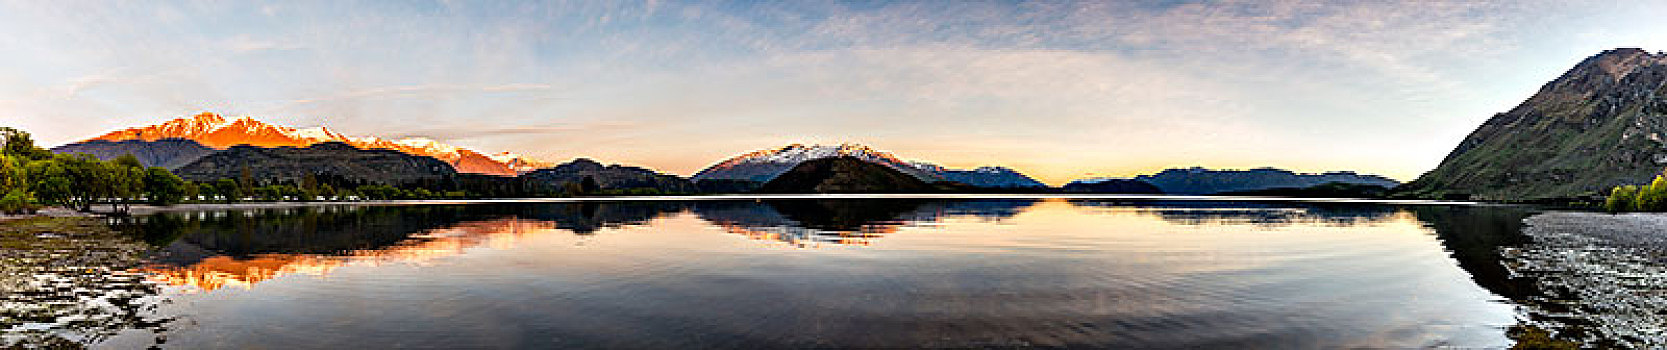 日出,早晨,气氛,山,反射,瓦纳卡,湖,岩石,顶峰,湾,奥塔哥,南部地区,新西兰,大洋洲